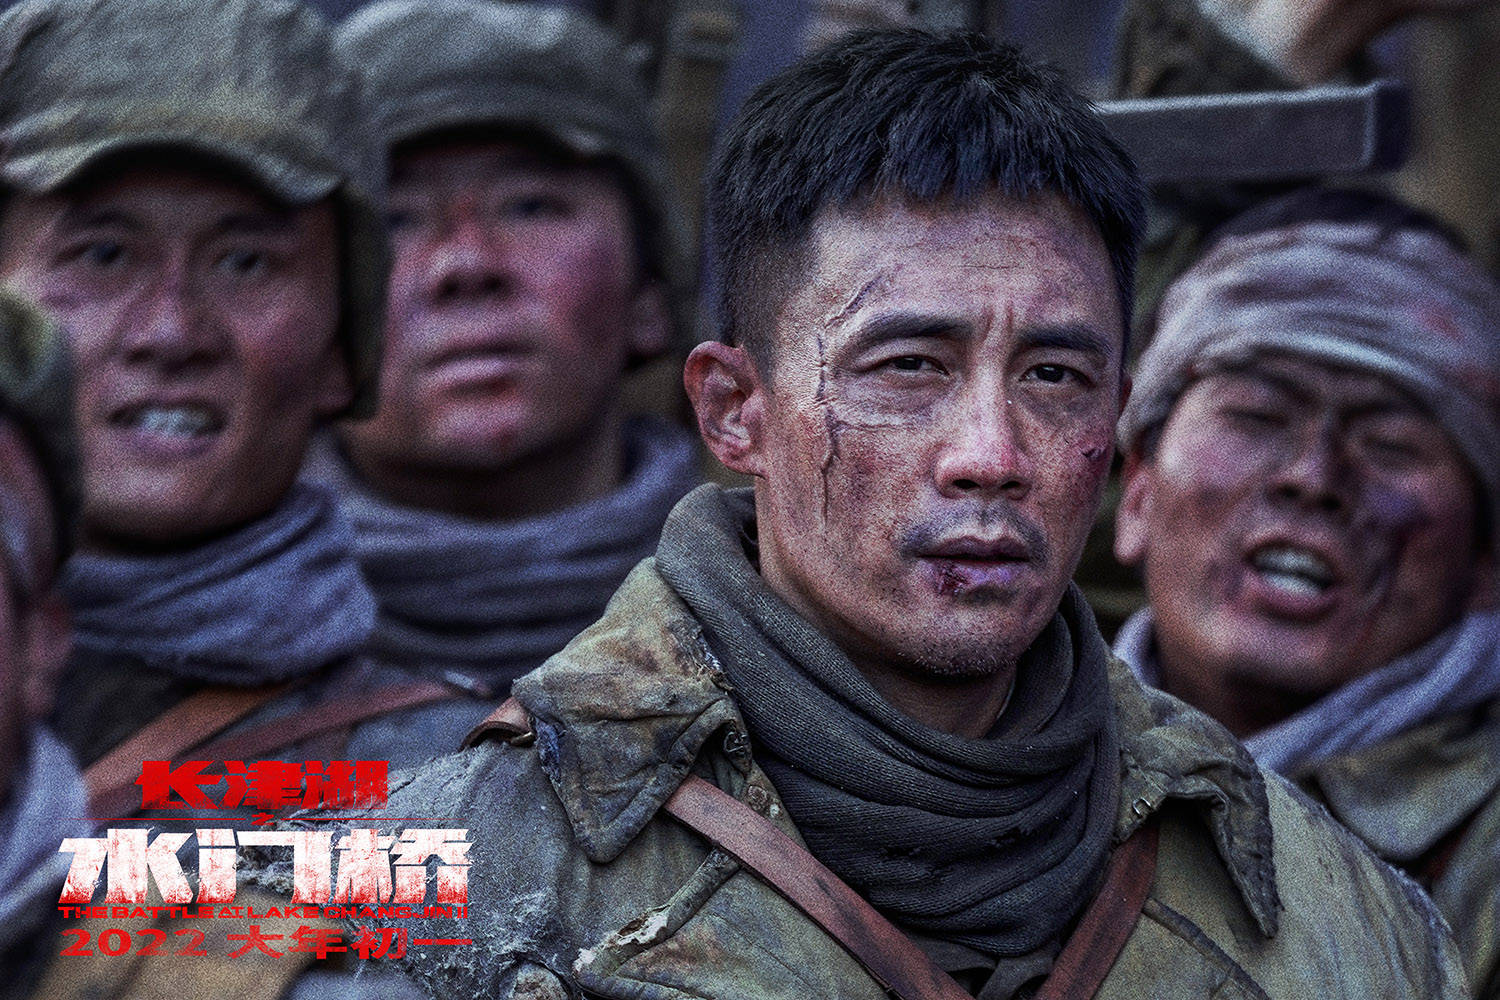 《长津湖之水门桥》IMAX海报曝光 钢七连战士脸上带伤无畏风雪迎战